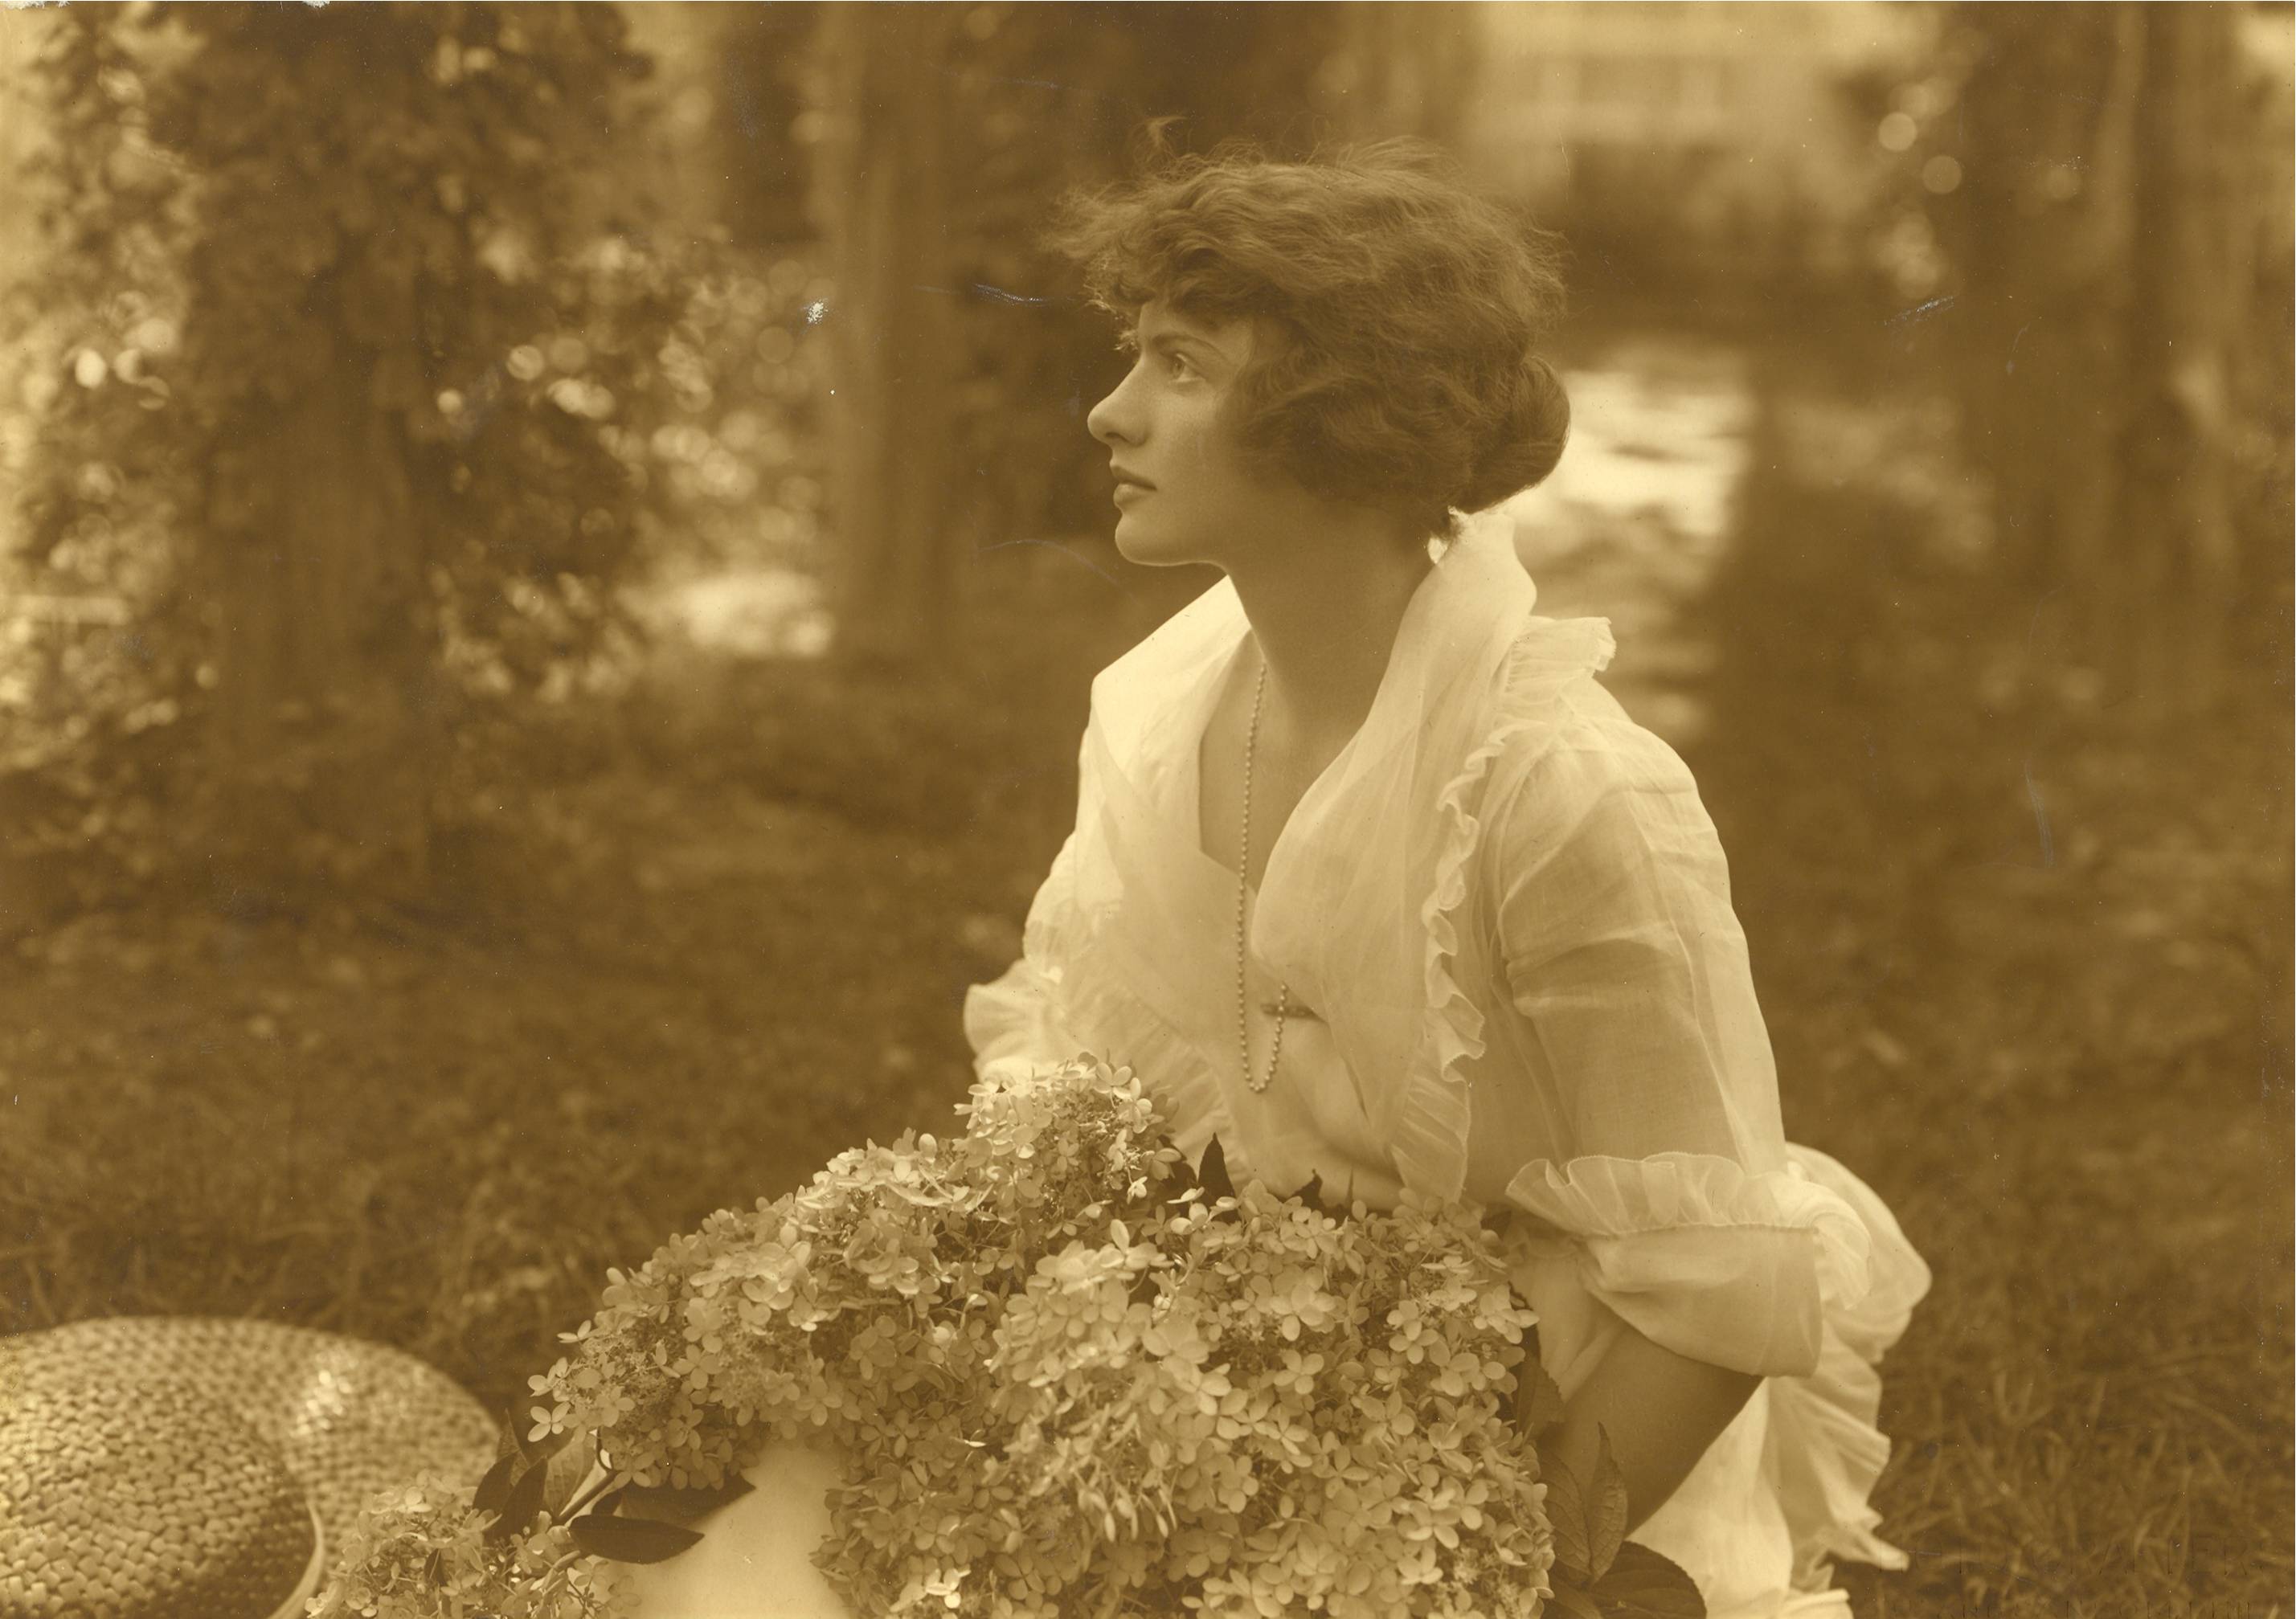 Une jeune femme de profil tient un imposant bouquet de fleurs. Elle porte une blouse blanche légère.